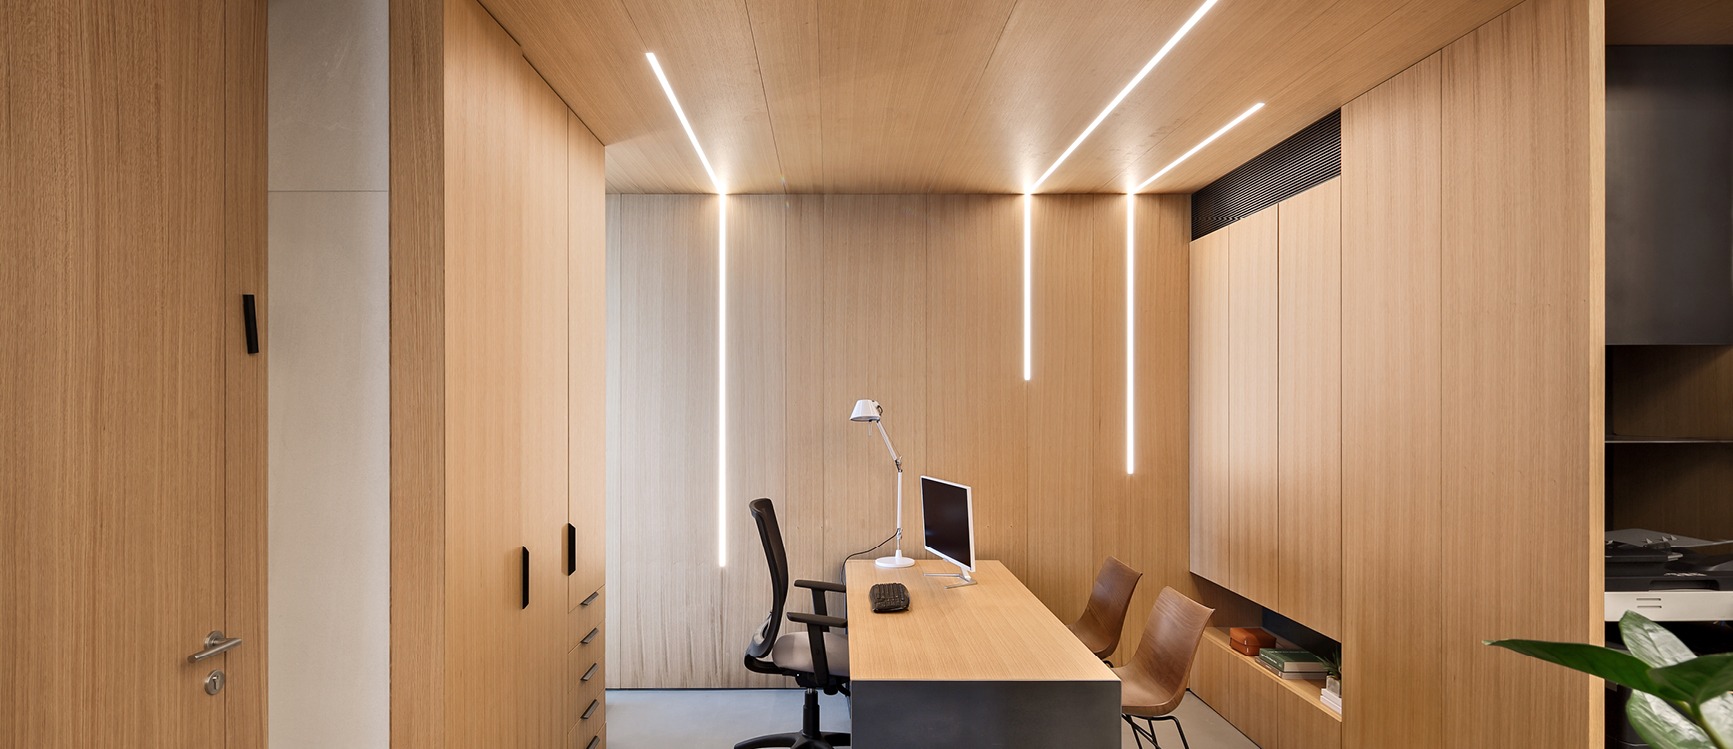 חדר מנהלים במשרד מעוצב חיפוי עץ שחור חום בהתאמה אישית - נגריית אבן צור